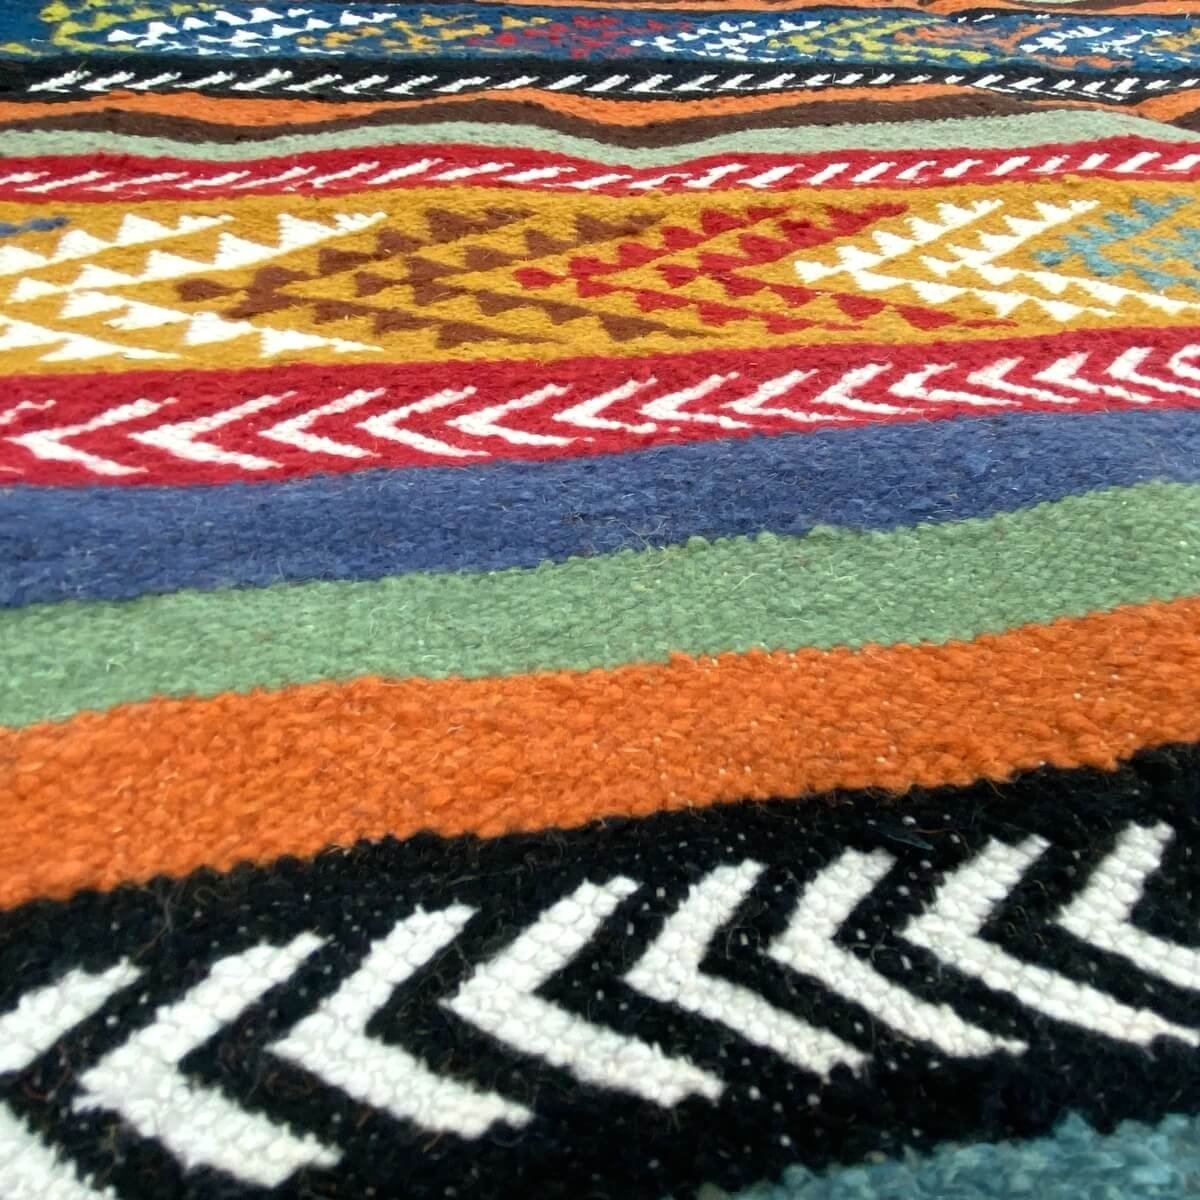 Tapete berbere Tapete Kilim Beri 100x150 Multicor (Tecidos à mão, Lã) Tapete tunisiano kilim, estilo marroquino. Tapete retangul